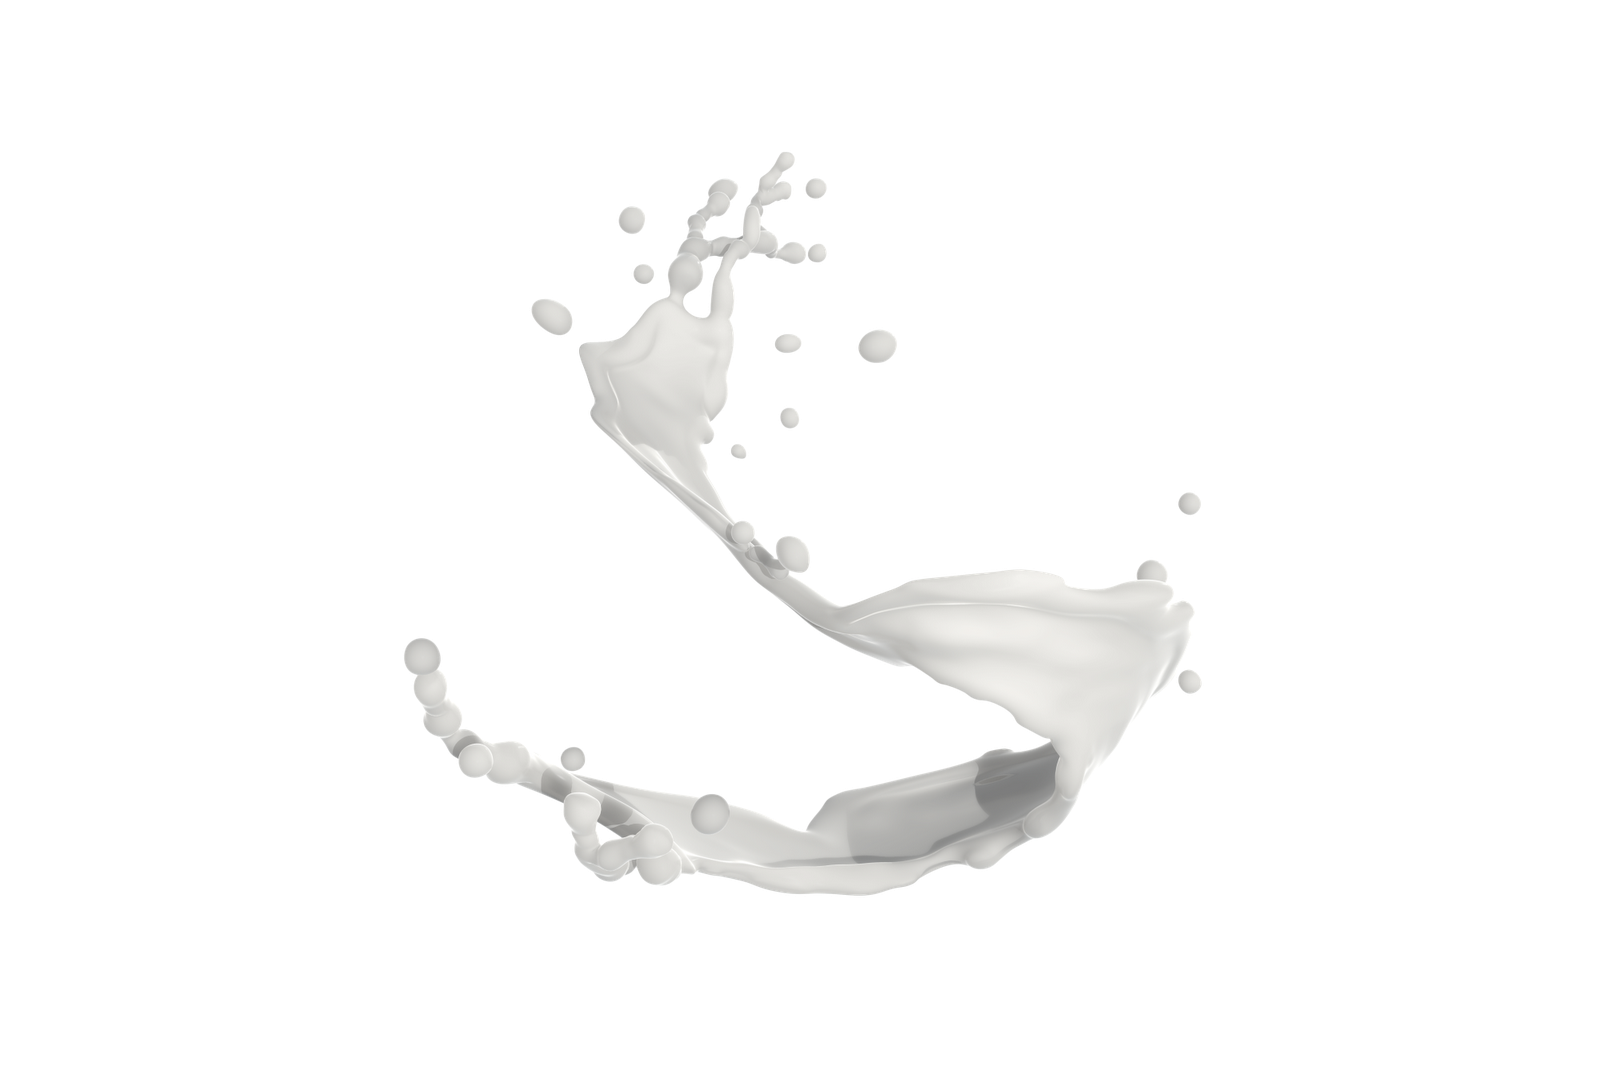 Süt sıçraması, süt dalgaları